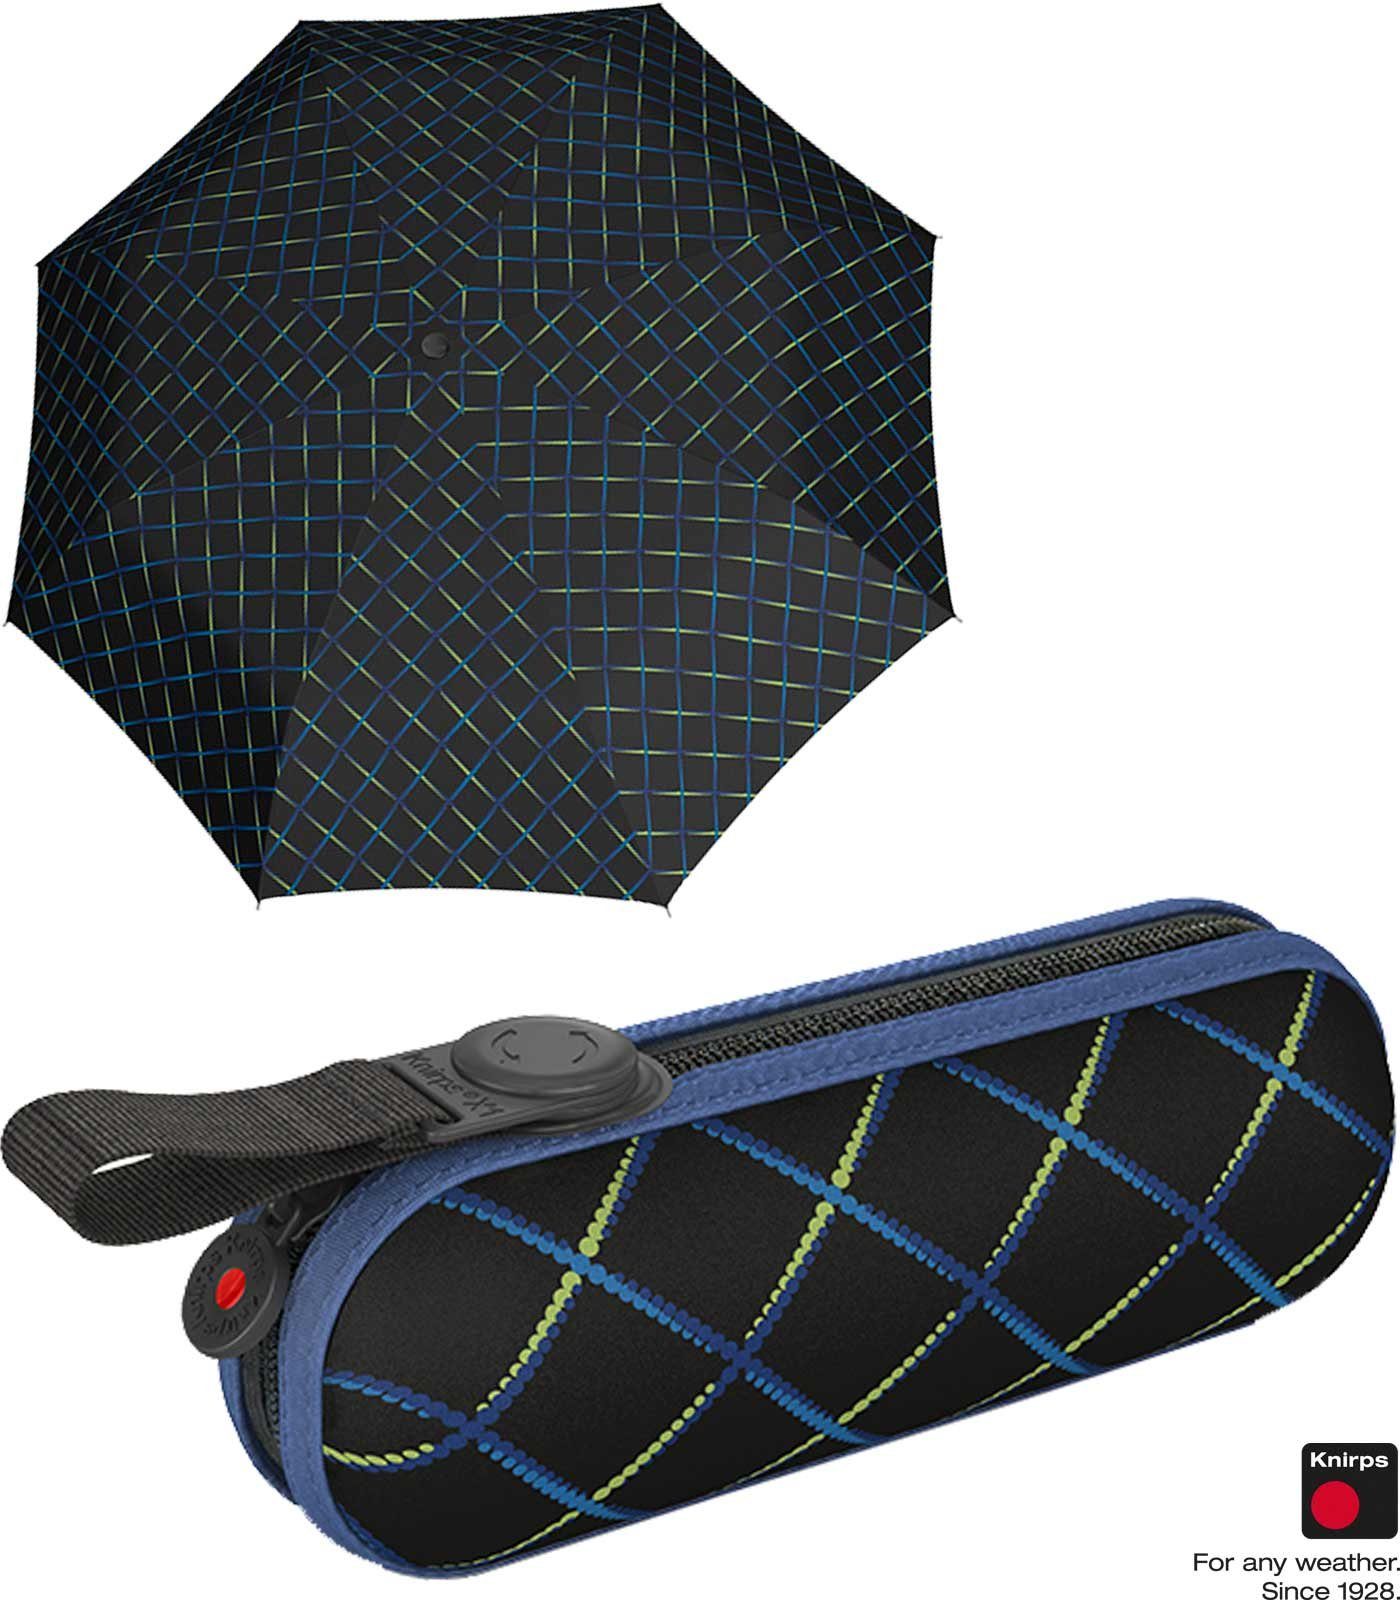 Knirps® Taschenregenschirm kleiner, leichter, kompakter gut für chains geschützt Damen, das Hard-Case-Etui Schirm durch